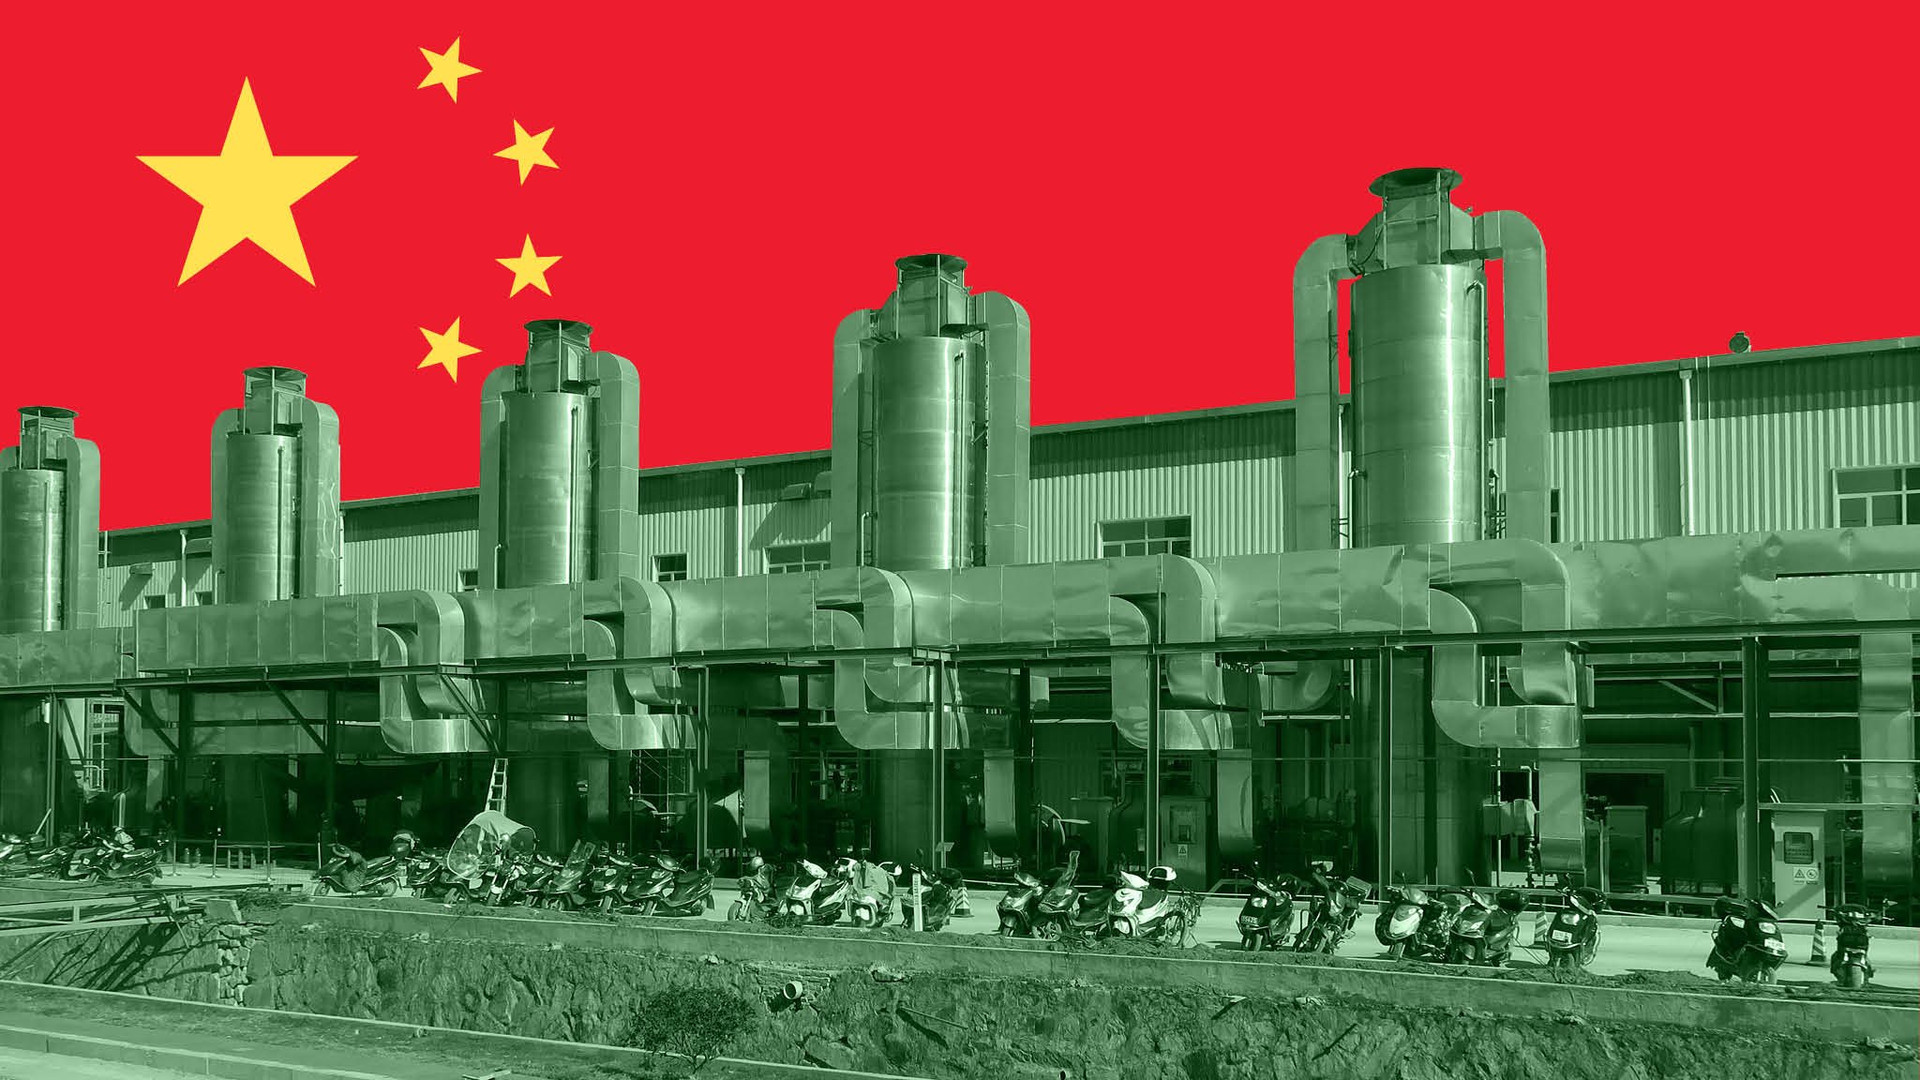 Trung Quốc sở hữu ‘trụ cột vàng’ đứng đầu thế giới trong một ngành công nghiệp cực hot: Nhật Bản, Hàn Quốc tung hàng loạt kế sách chỉ mong ‘lật đổ’, Đức cũng không đứng ngoài cuộc đua - Ảnh 1.